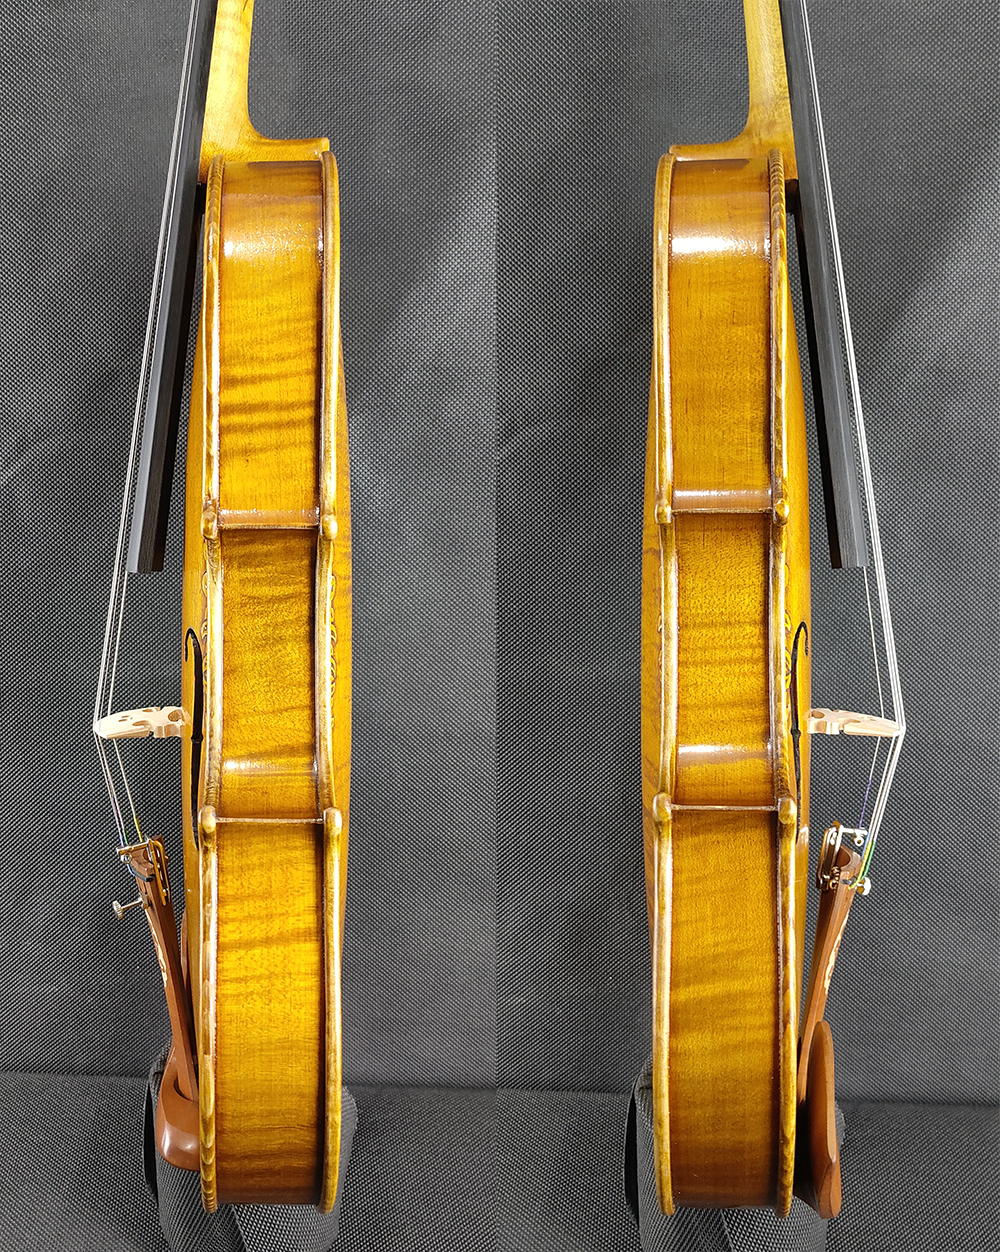 Wybrany 1-częściowy back Strad Royal Fleur de lys Violin 4/4 Rozmiar #3159 Profesjonalne skrzypce ręczne ręcznie wykonane naftowe lakier